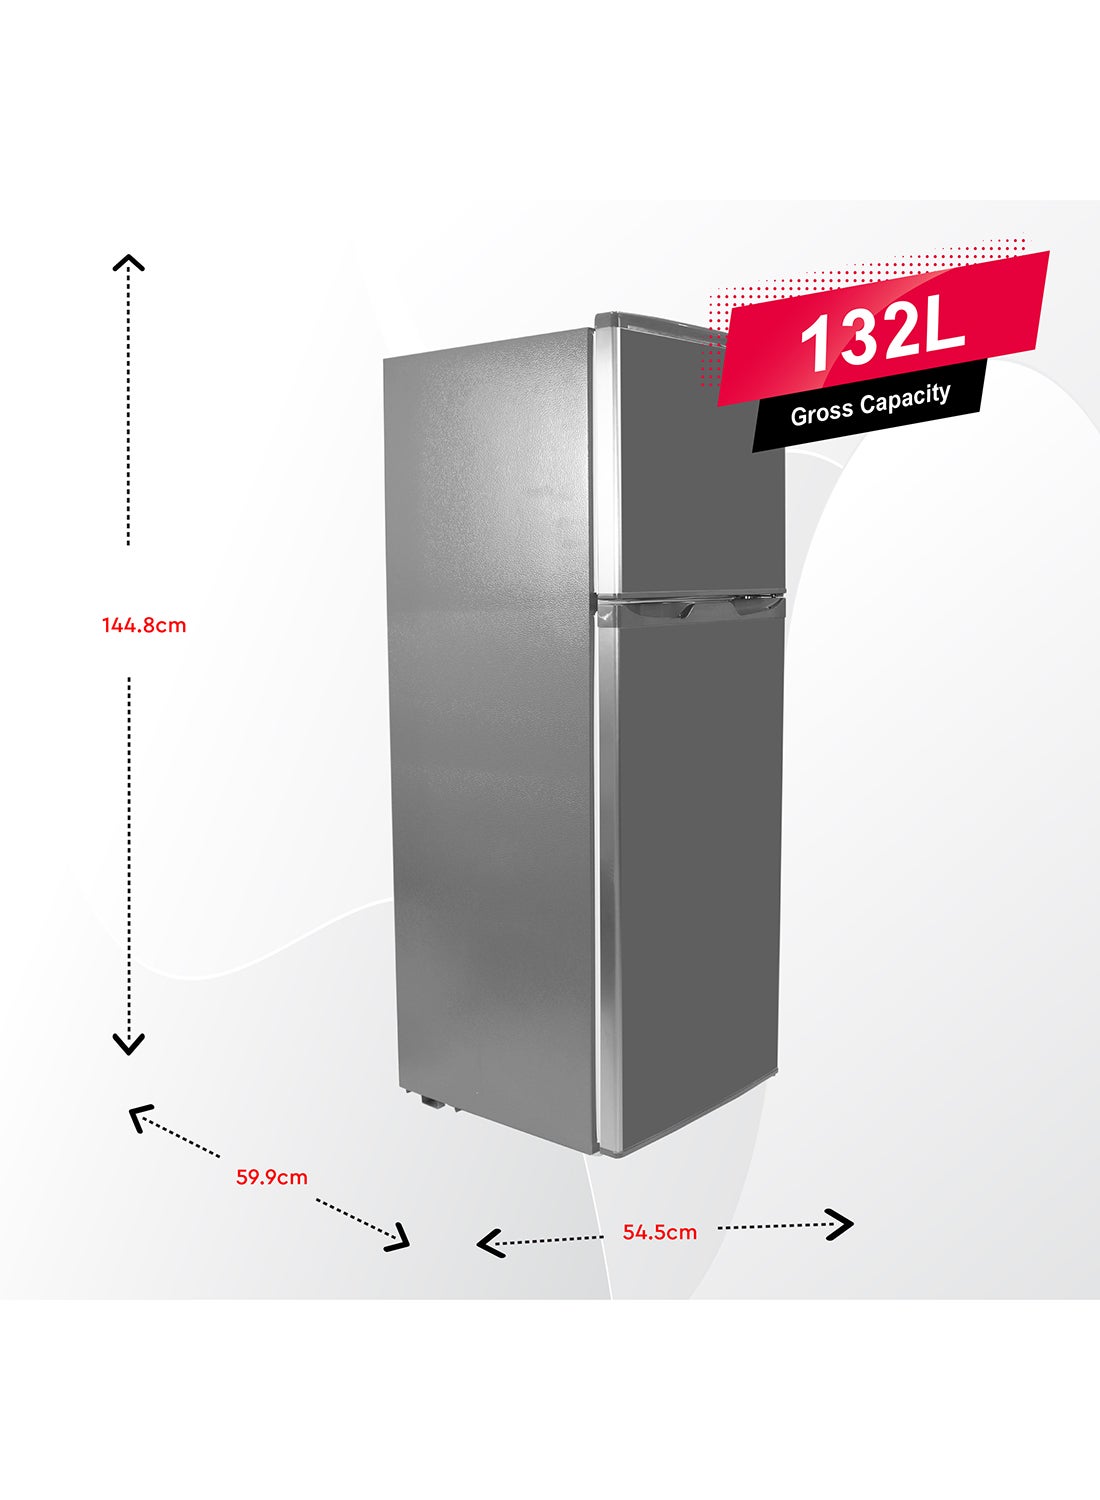 Top-Freezer Defrost Double Door Refrigerator NR185RSI Silver 